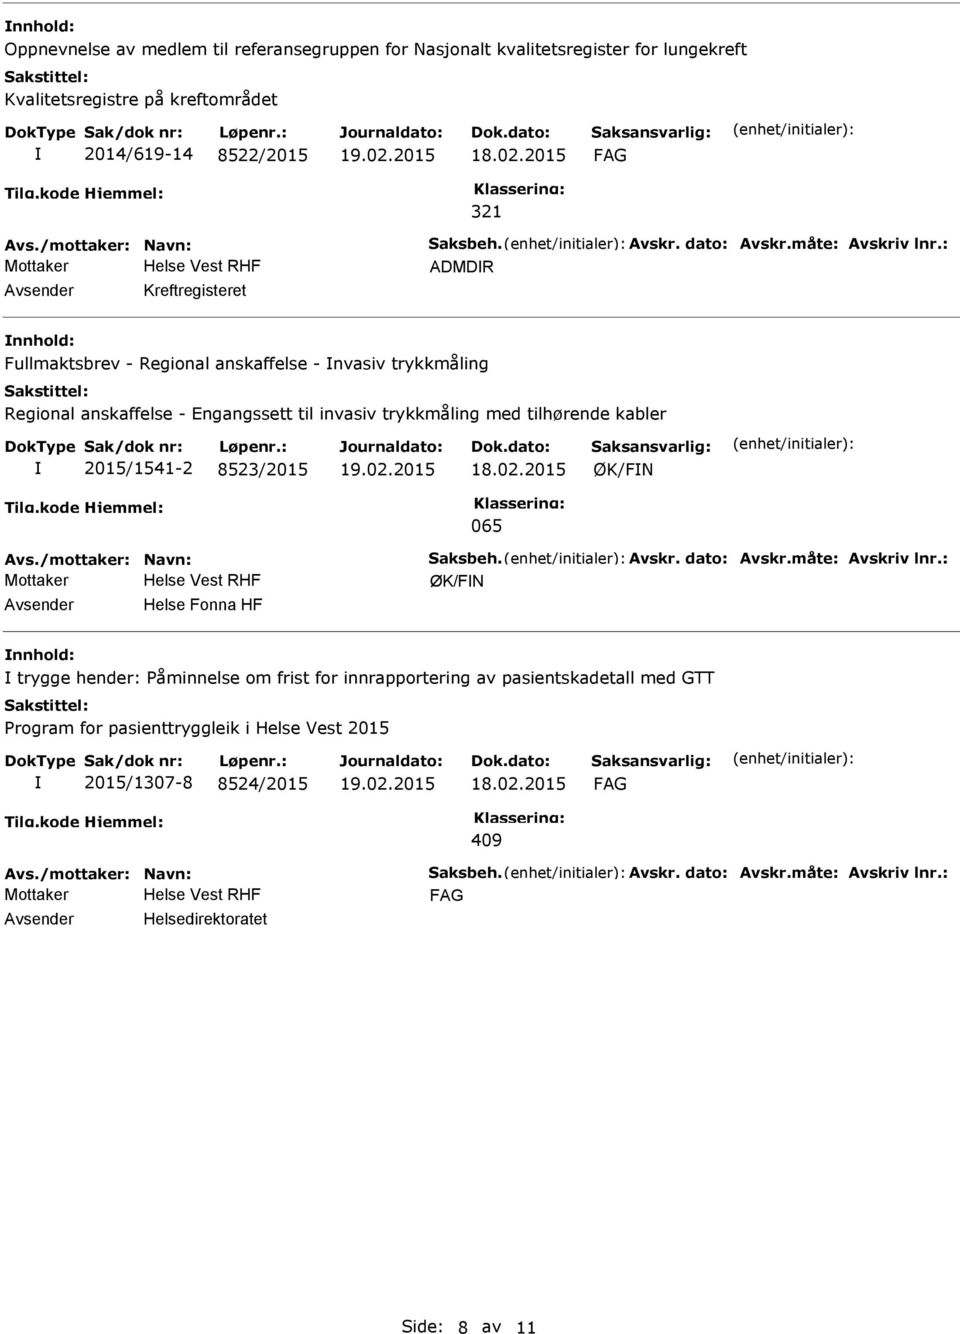 : ADMDR Kreftregisteret Fullmaktsbrev - Regional anskaffelse - nvasiv trykkmåling Regional anskaffelse - Engangssett til invasiv trykkmåling med tilhørende kabler 2015/1541-2 8523/2015